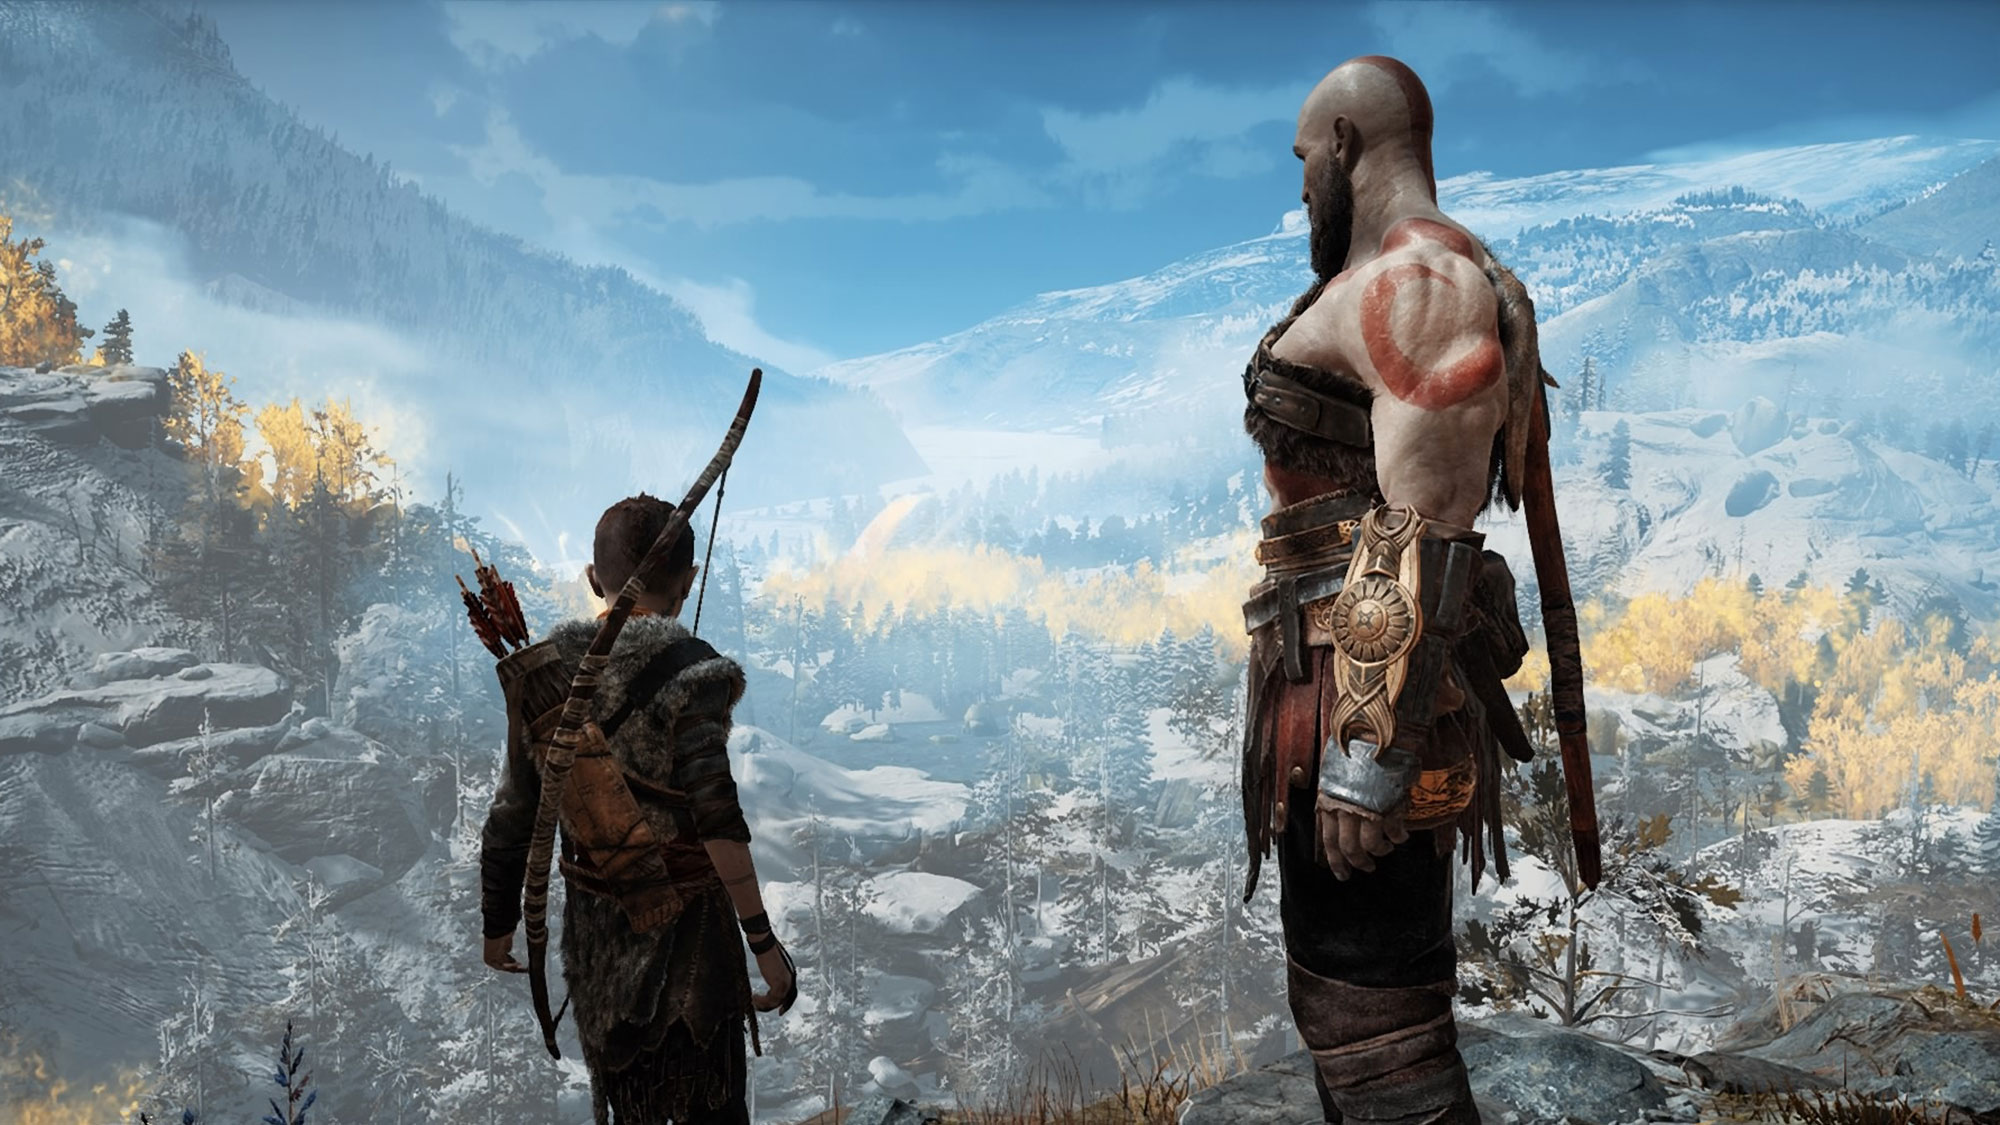 Atreus and Kratos in God of War